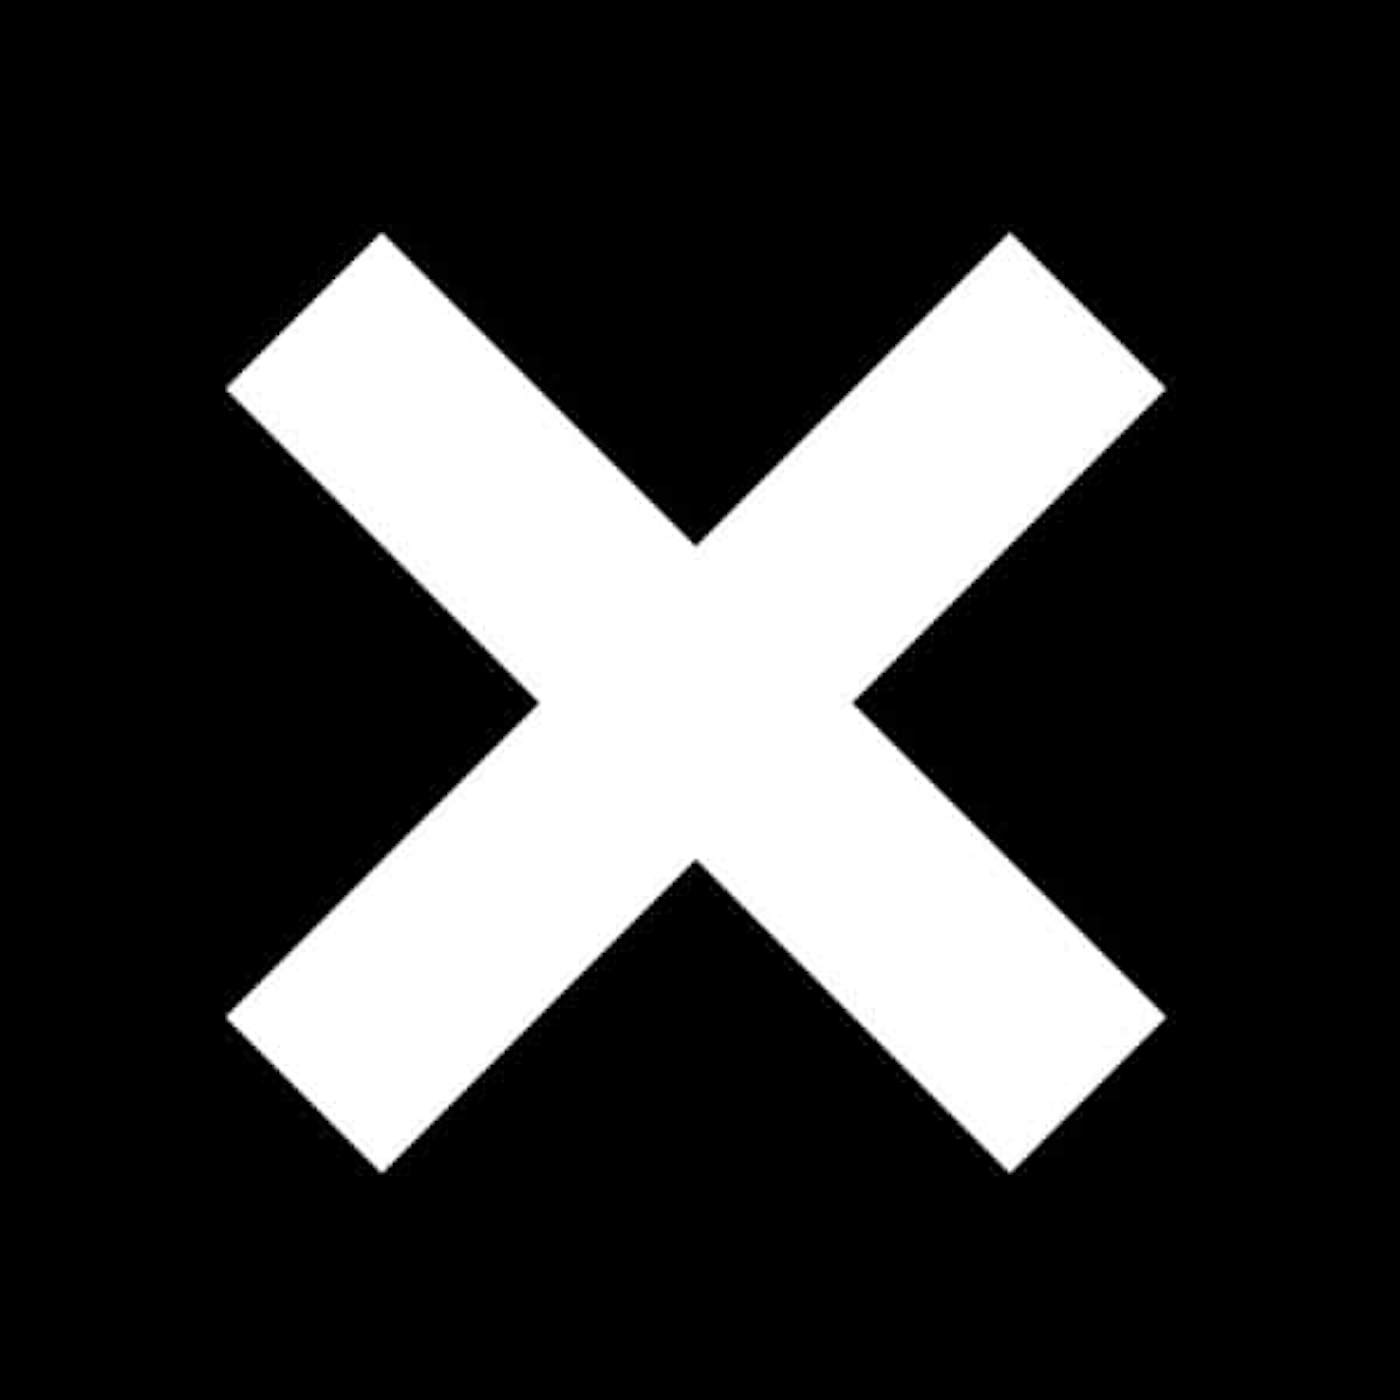 The xx Vinyl Record